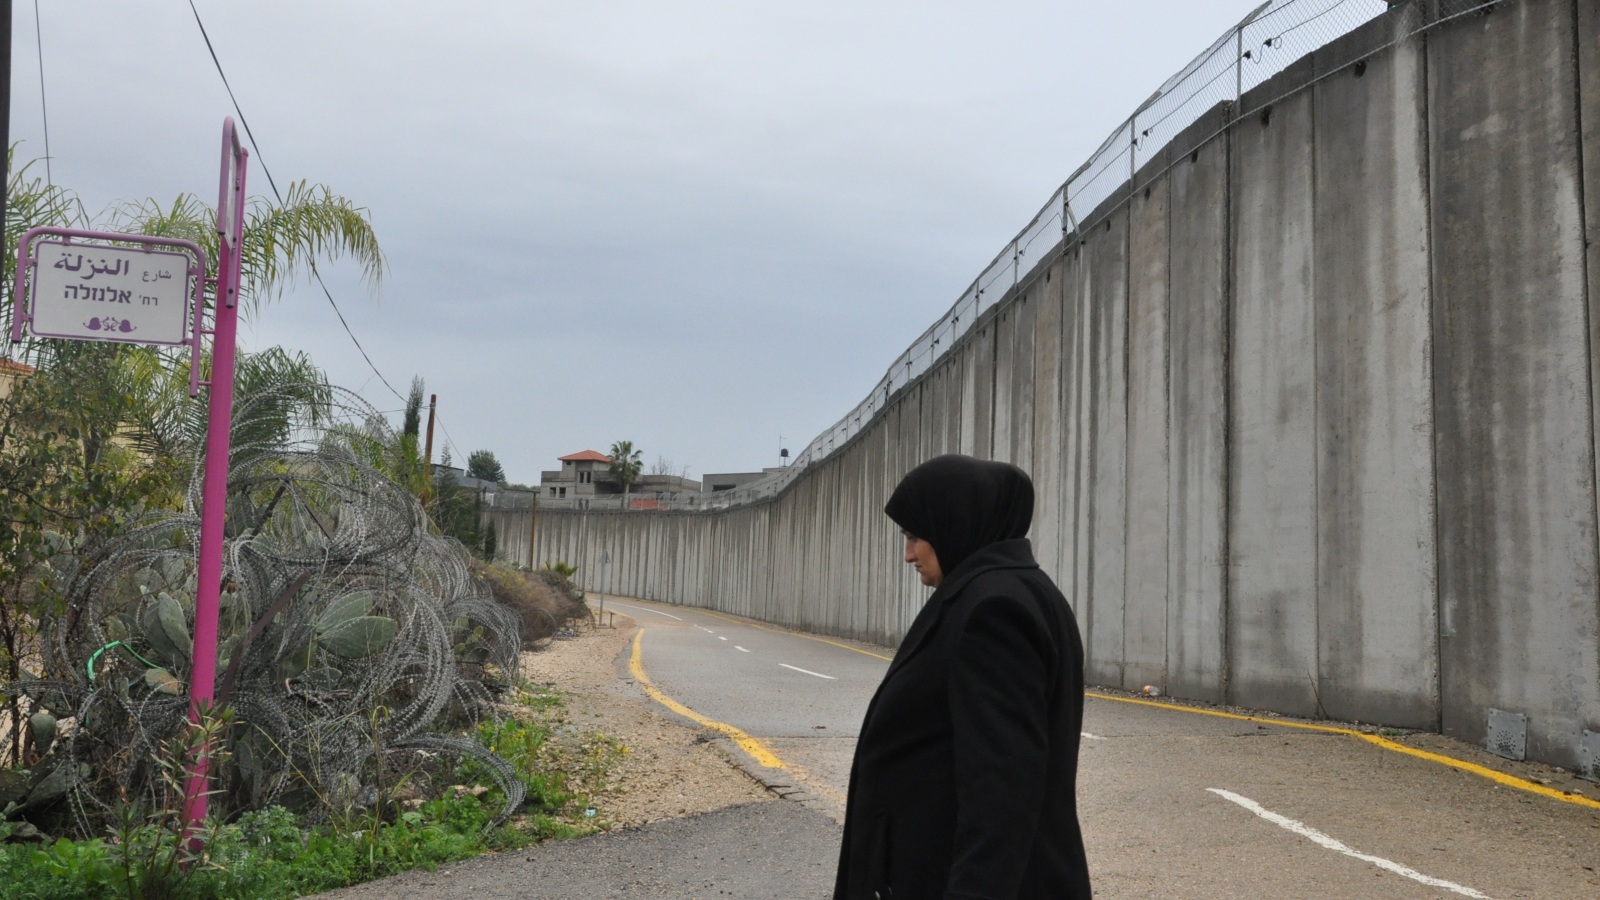 الجدار العازل بمساره قرب مدينة باقة الغربية التي أبدت إسرائيل استعدادها التنازل عنها لصالح ضم الكتل الاستيطاني (الجزيرة)